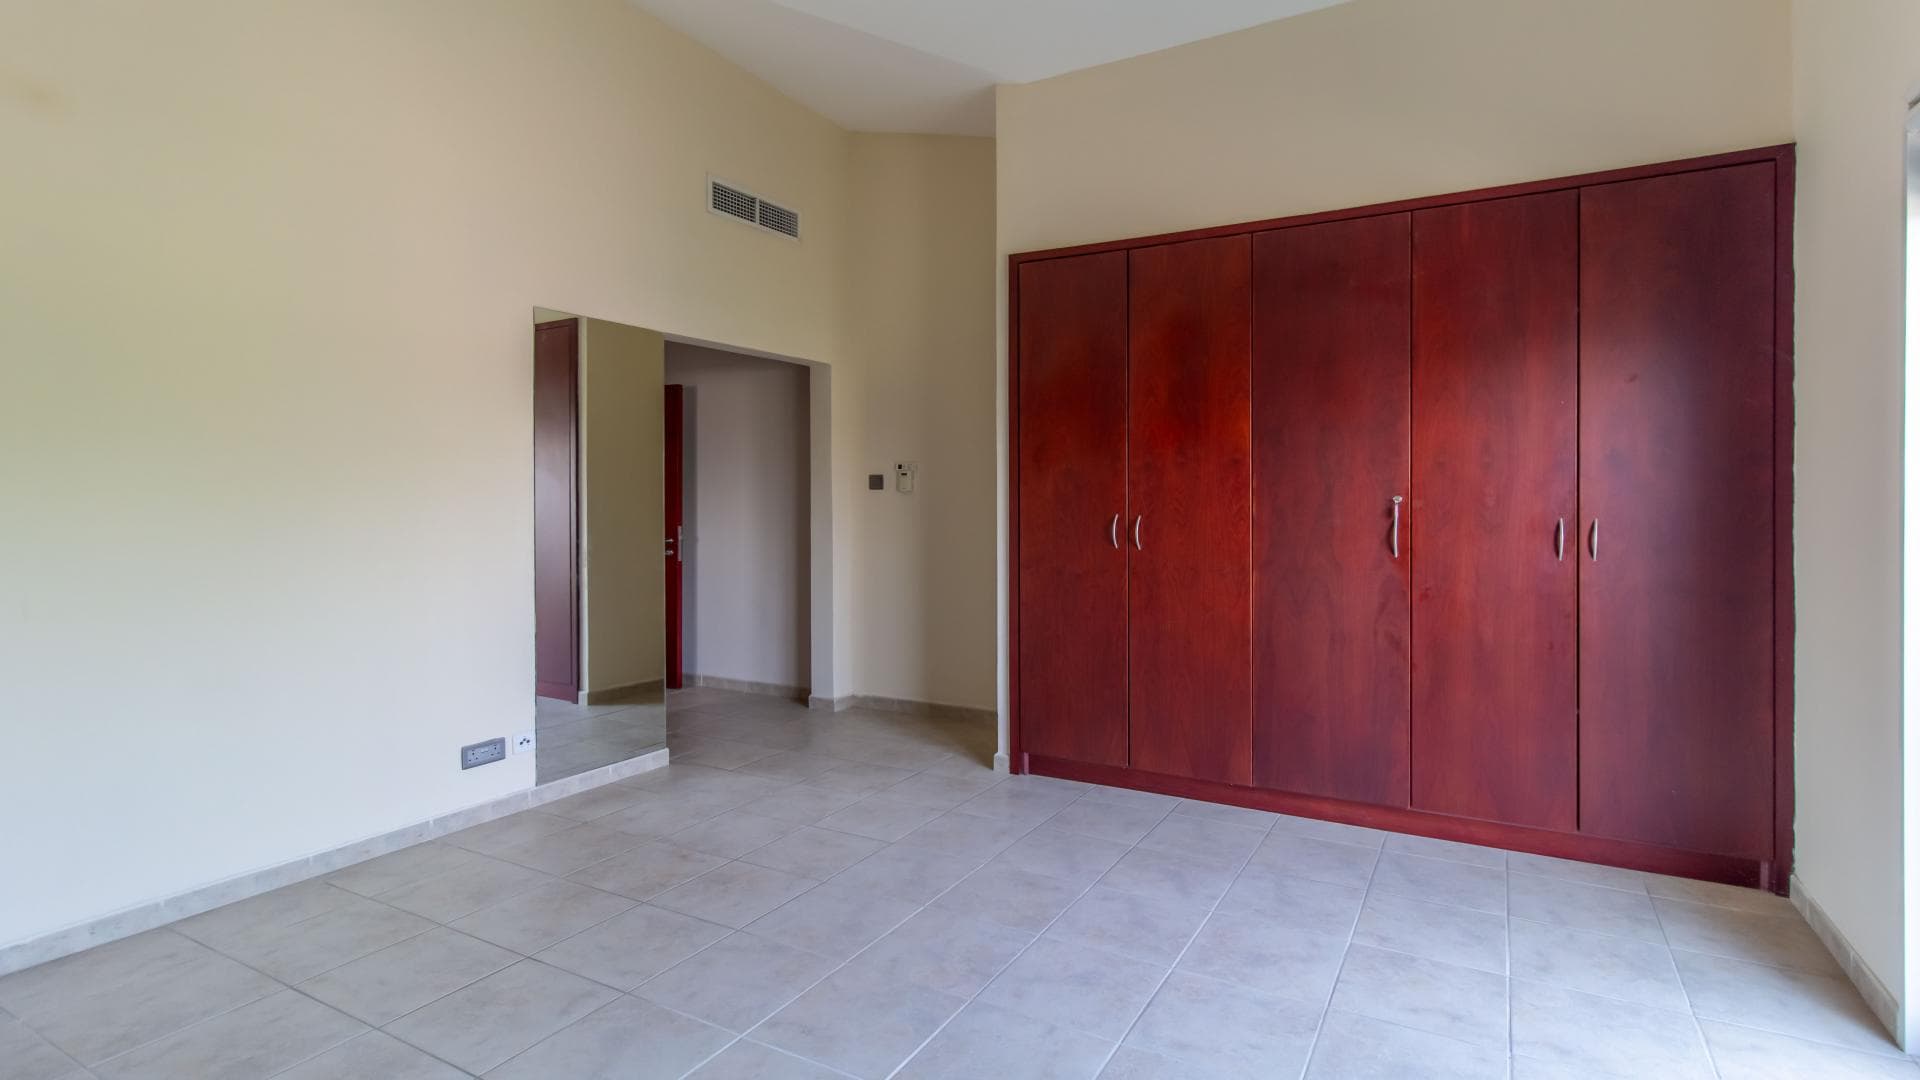 5 Bedroom Villa For Rent Al Thamam 36 Lp37795 10d1fd27d1e64d00.jpg